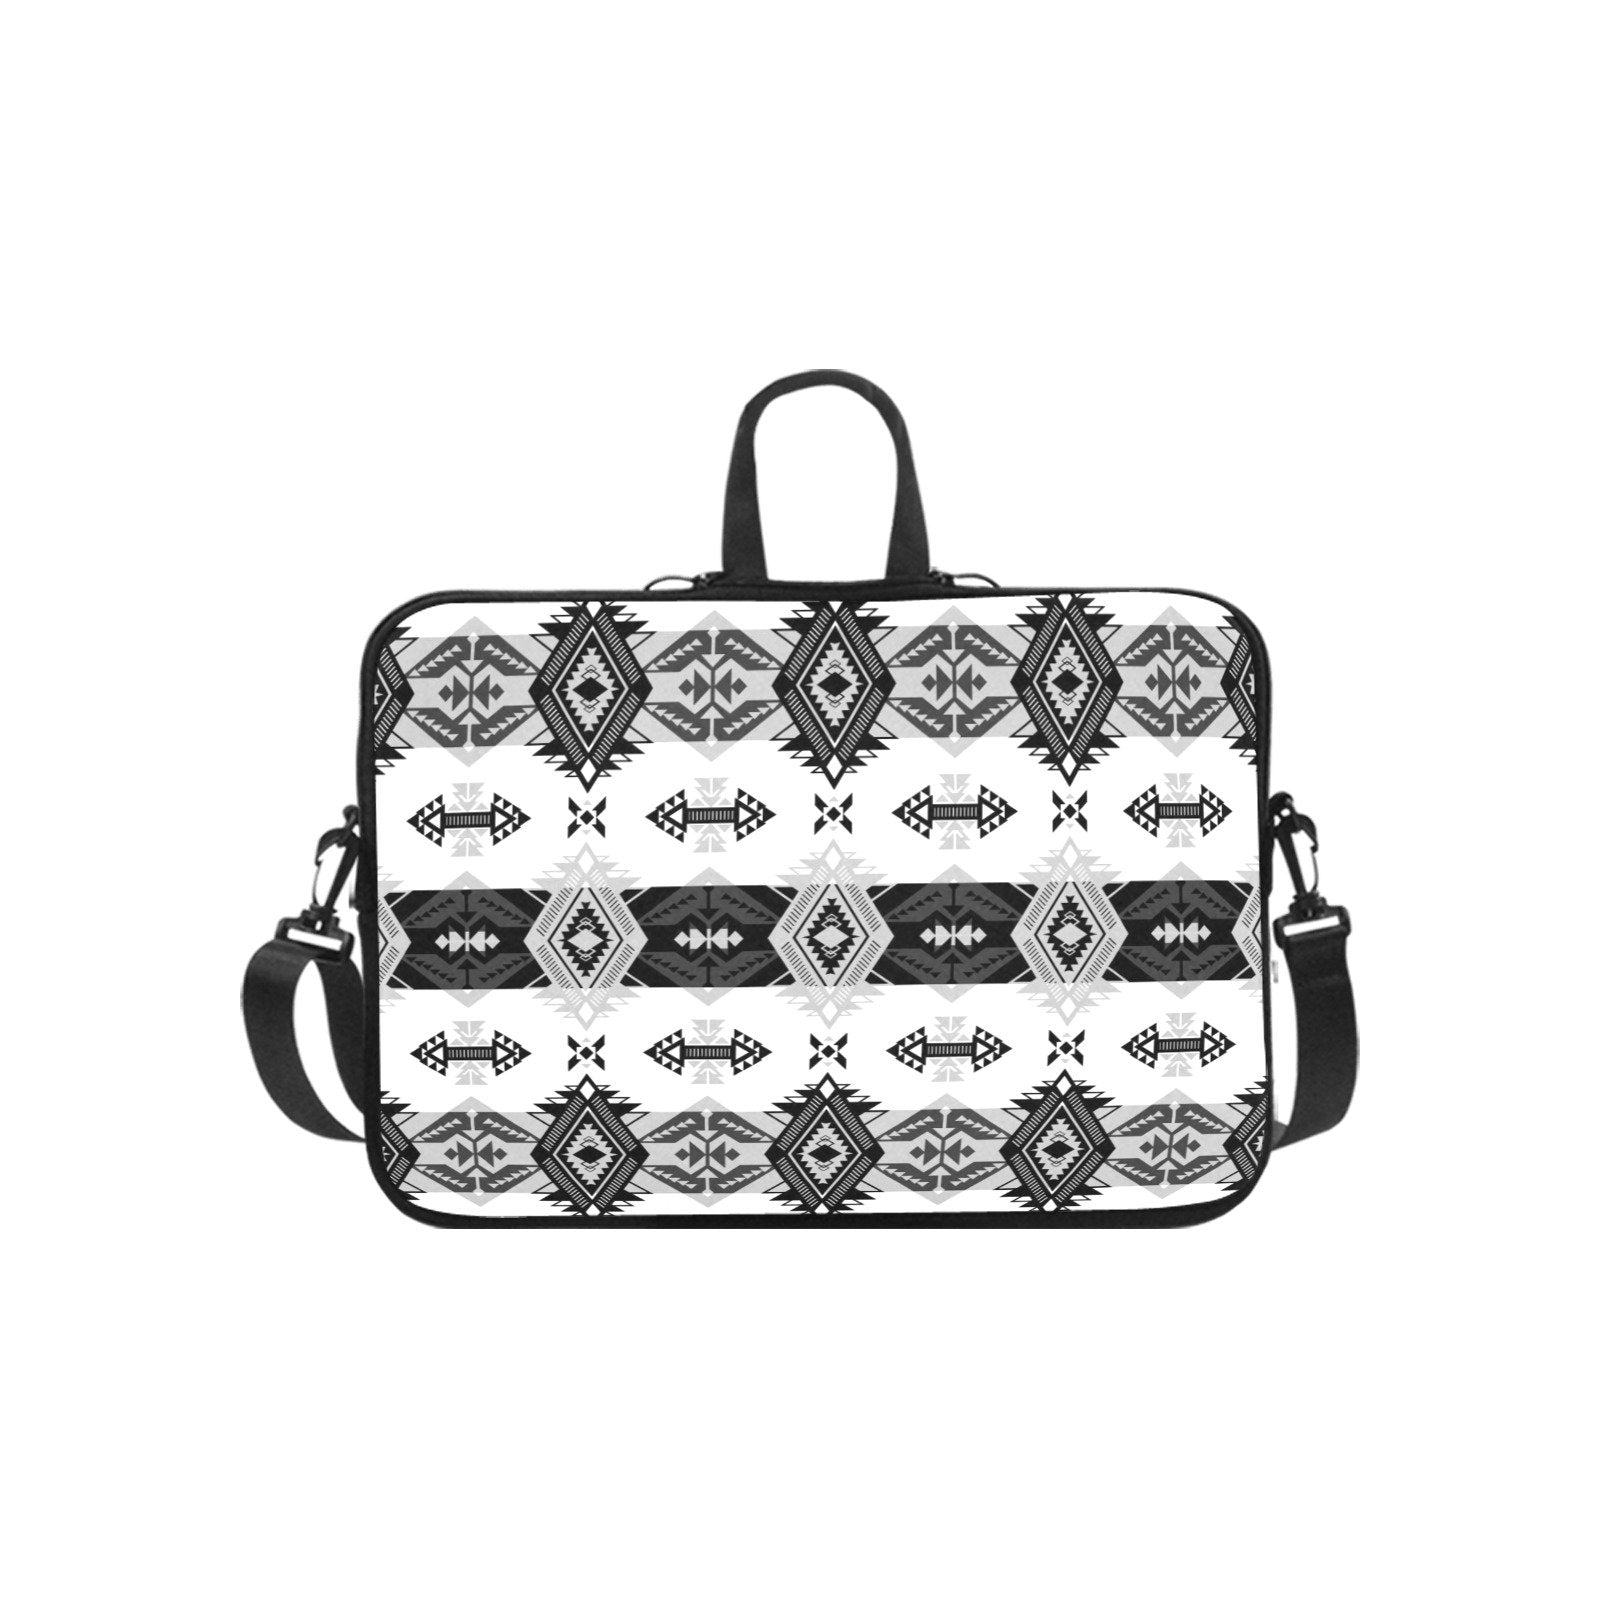 Sovereign Nation Black and White Laptop Handbags 14" bag e-joyer 